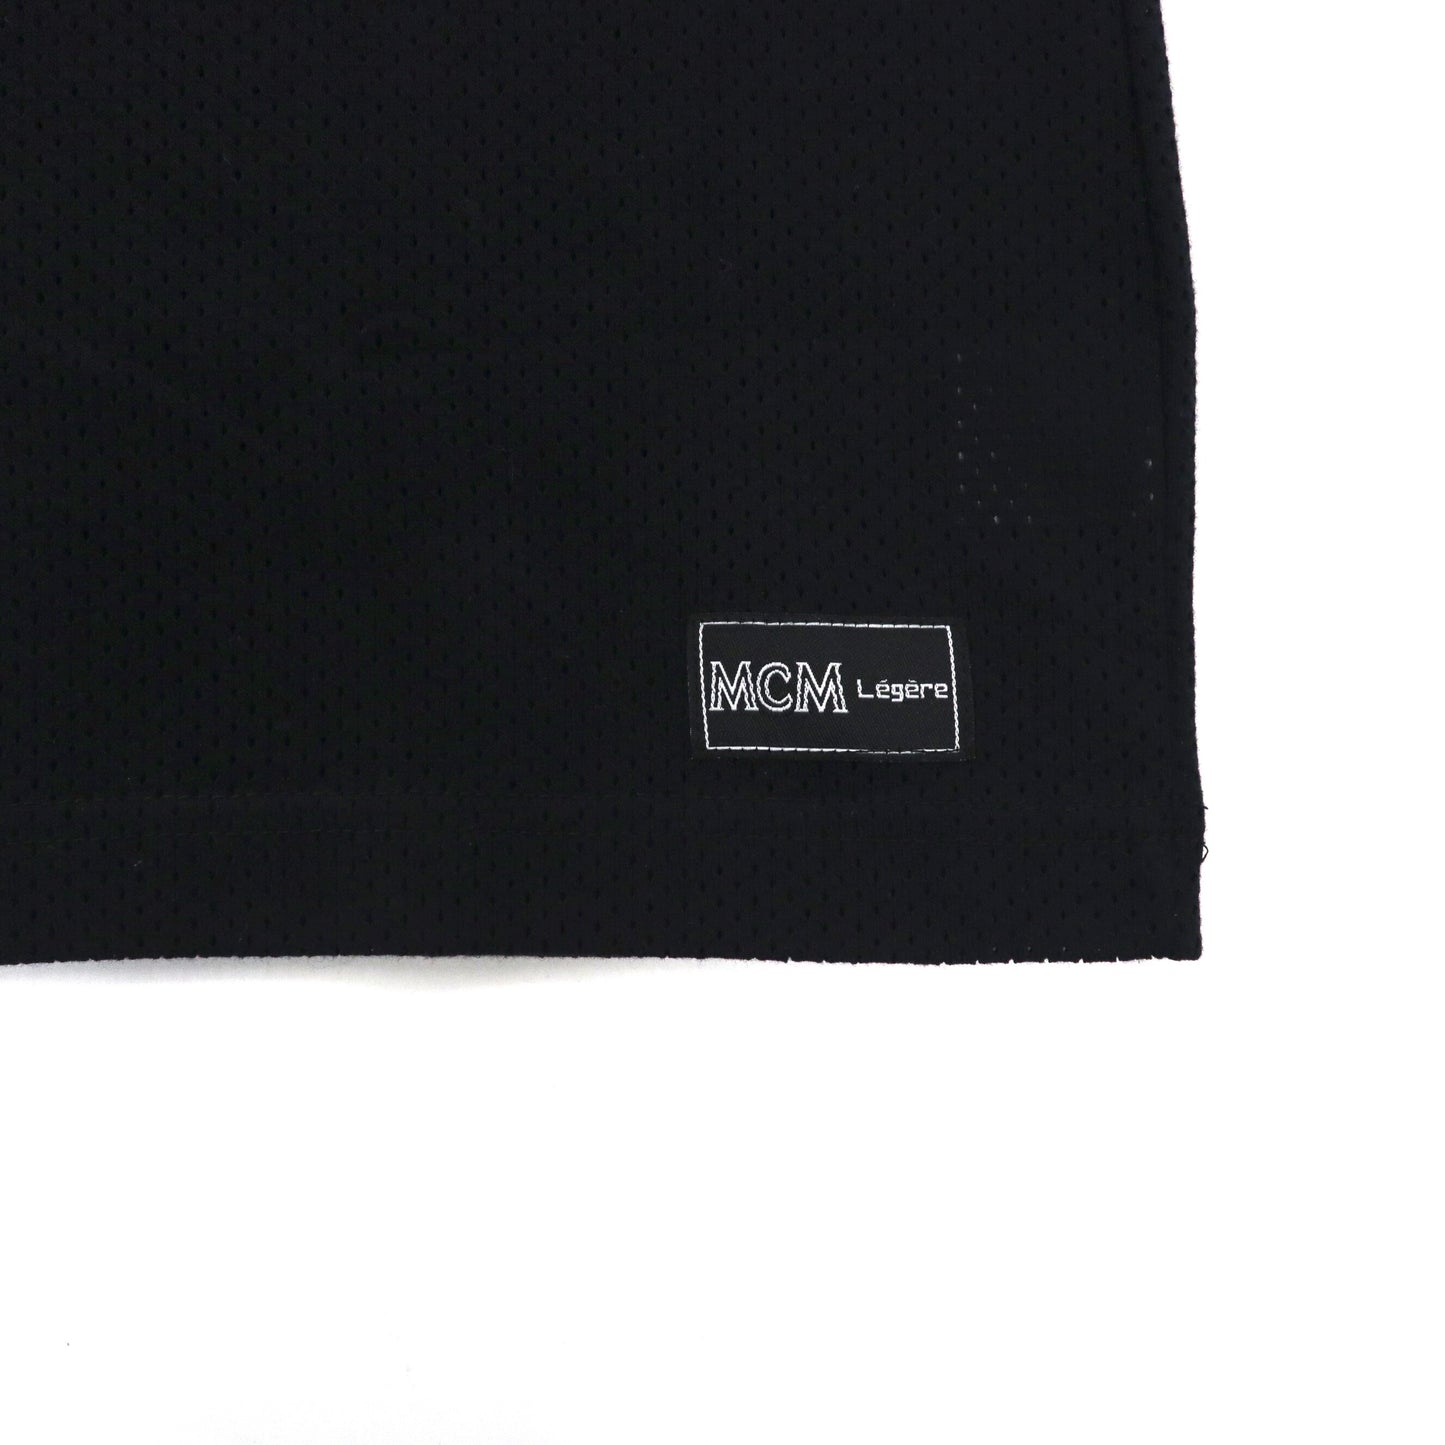 MCM Legere ビッグサイズ メッシュ Tシャツ L ブラック コットン パンチング オールド